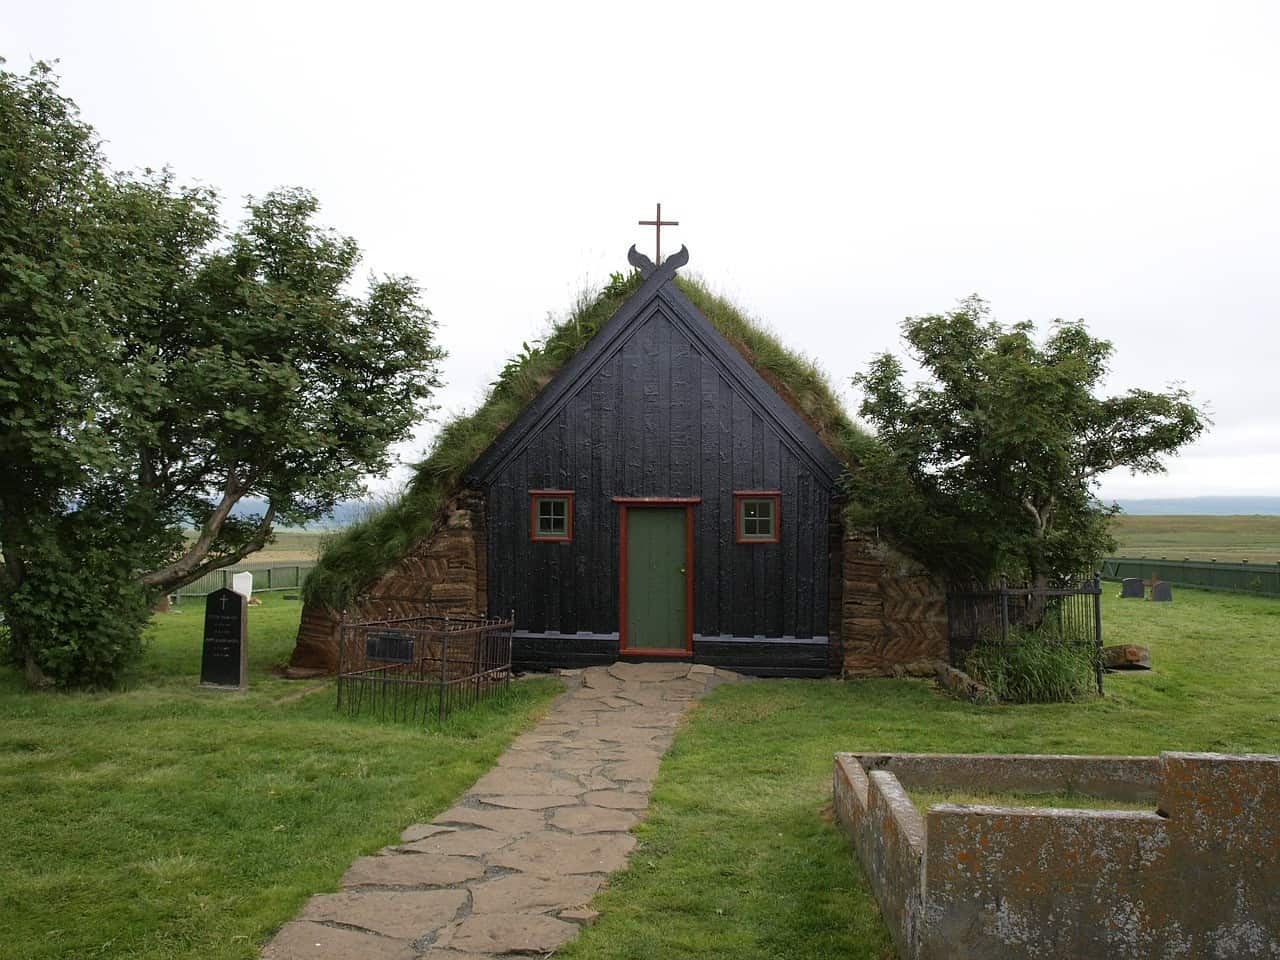 Vidimyrarkirkja Turf Church in Skagafjordur